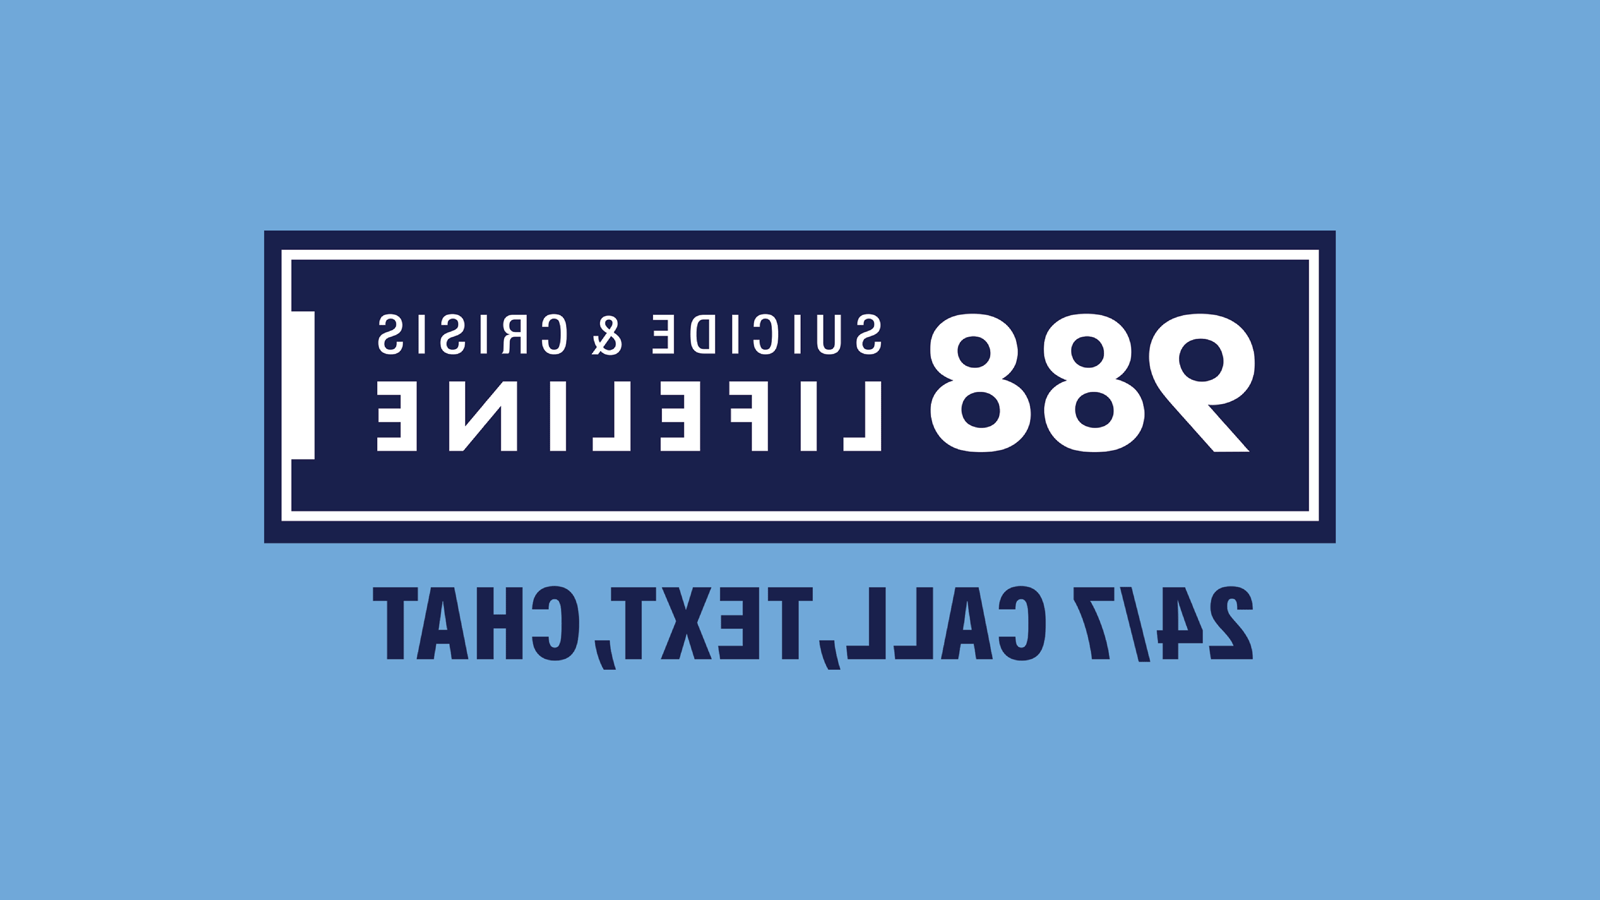 988自杀和危机救生索是用白色字体在一个藏蓝色矩形内，一个白色轮廓被一个藏蓝色轮廓包围. 24/呼叫，文本，聊天是在深蓝色字体下的矩形框. 背景是一个天蓝色的矩形.